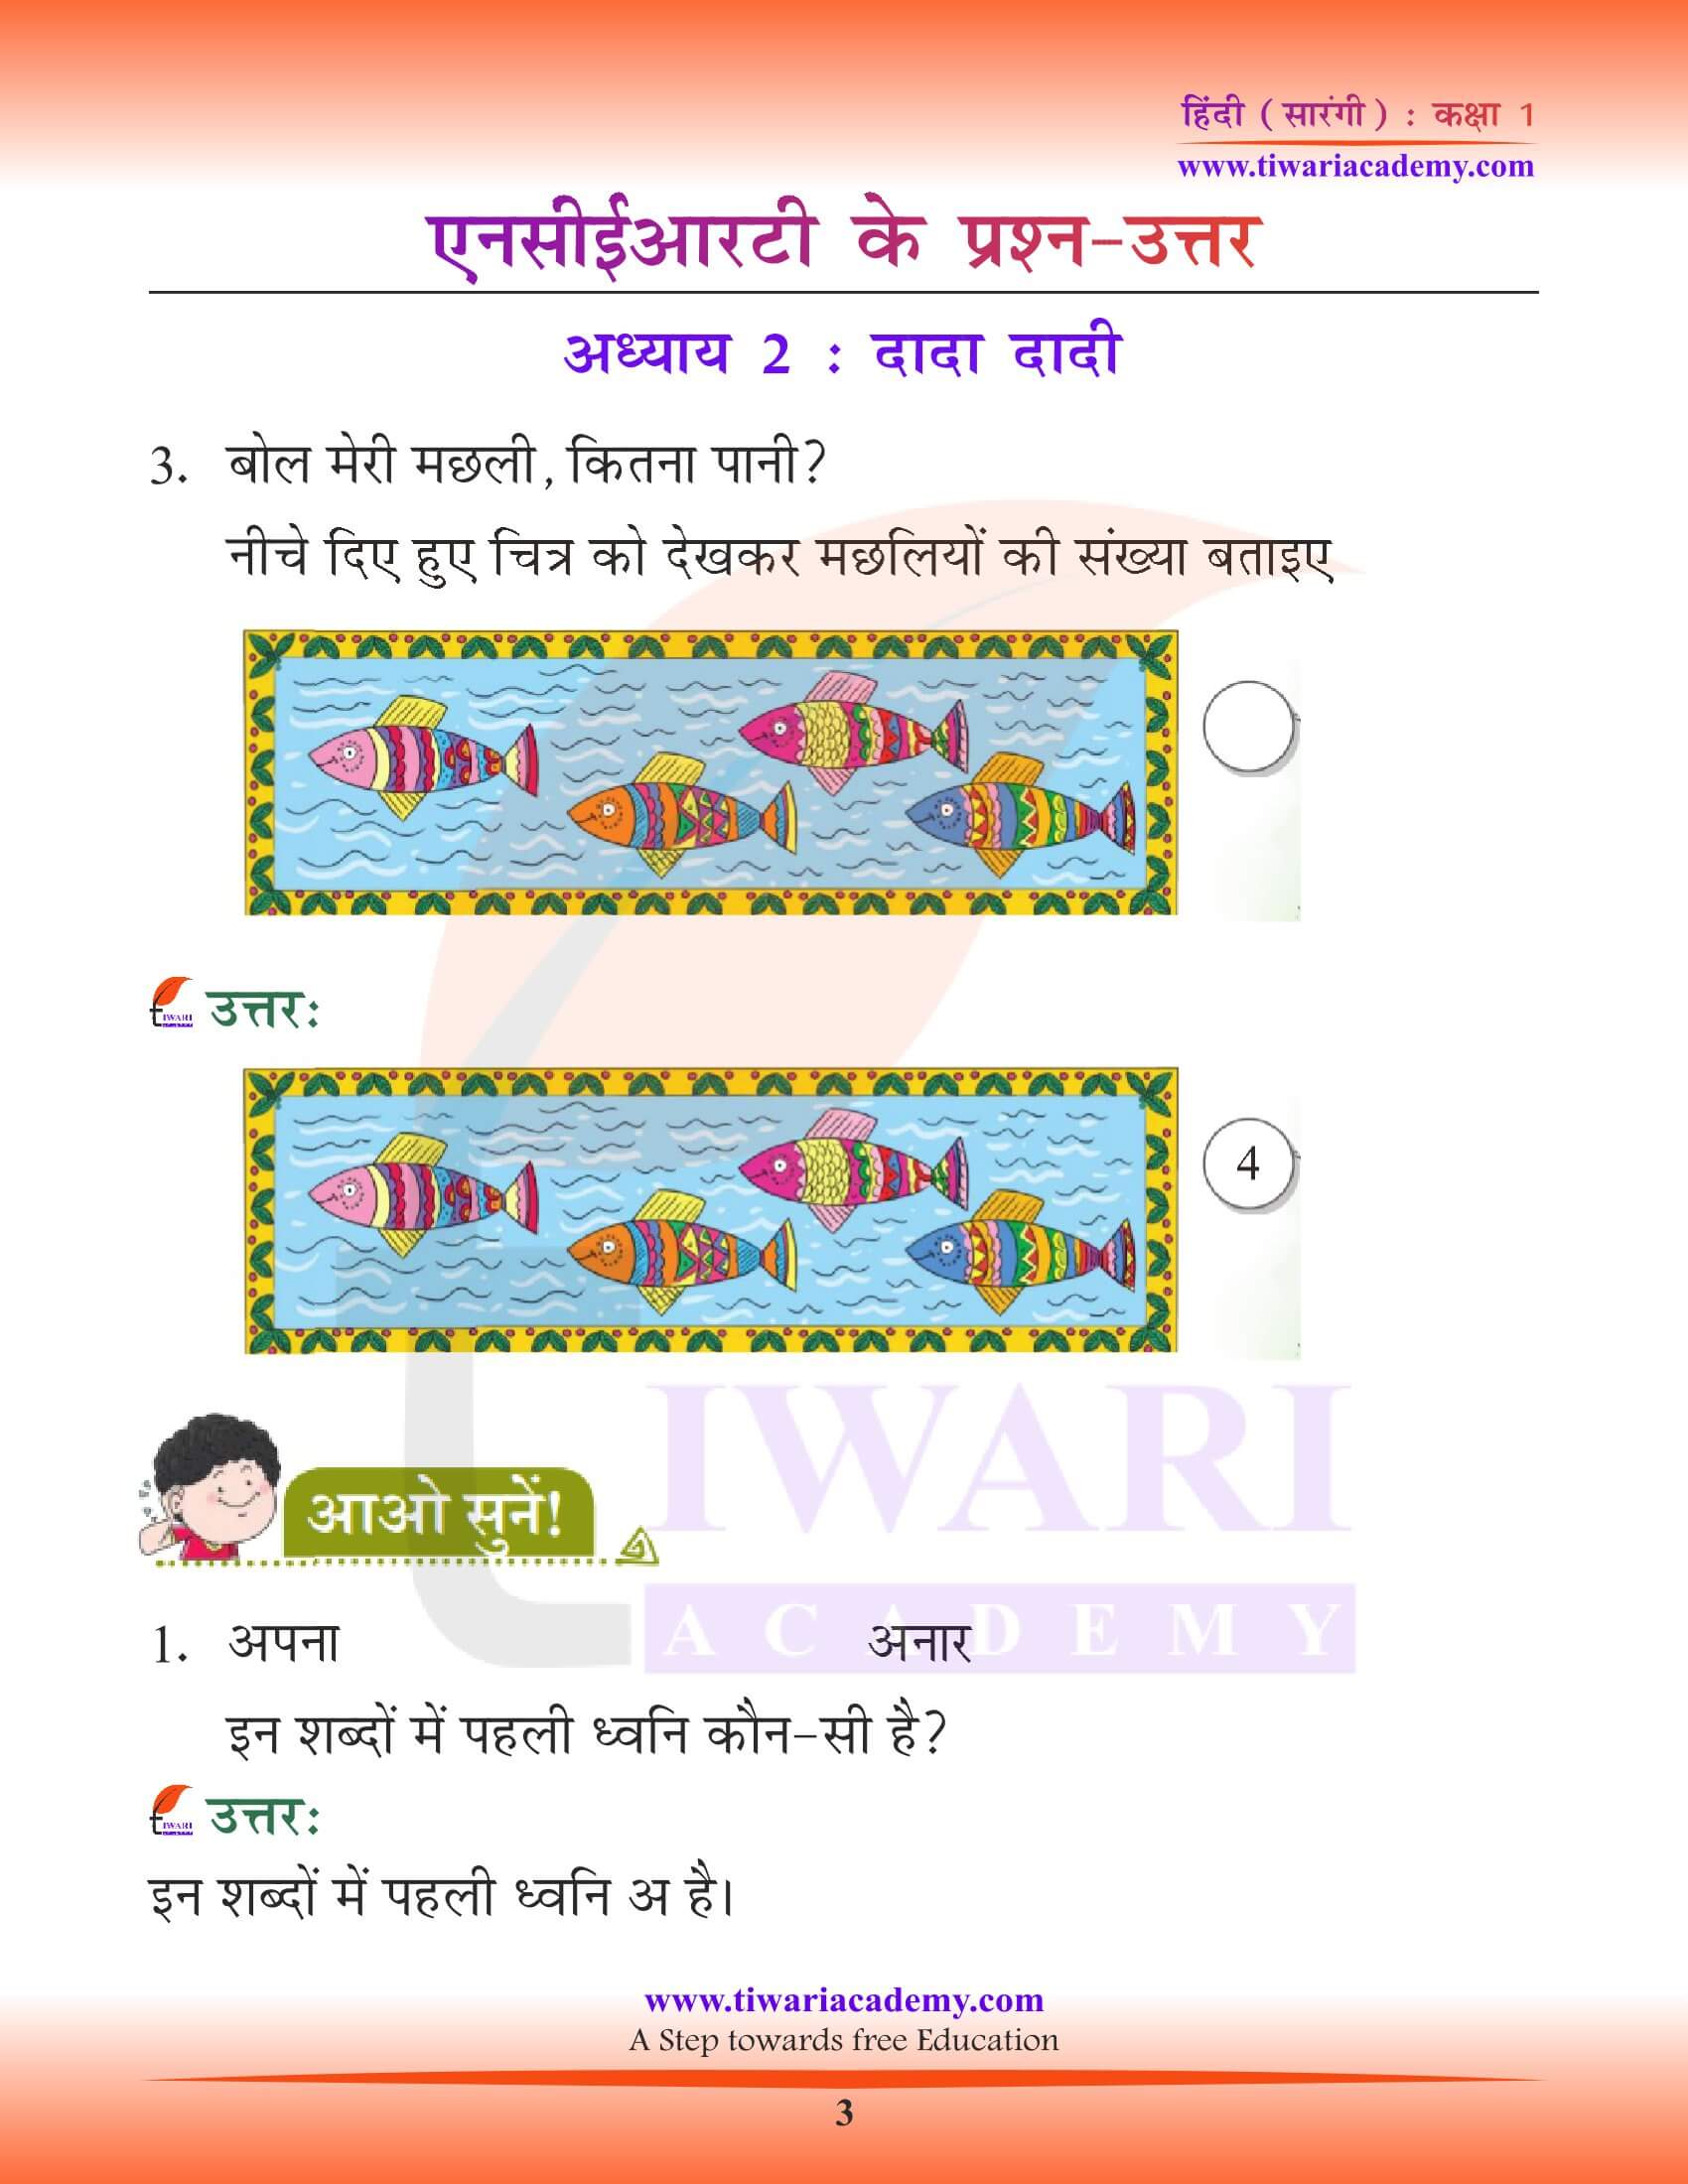 कक्षा 1 हिंदी सारंगी पाठ 2 दादा-दादी के प्रश्न उत्तर